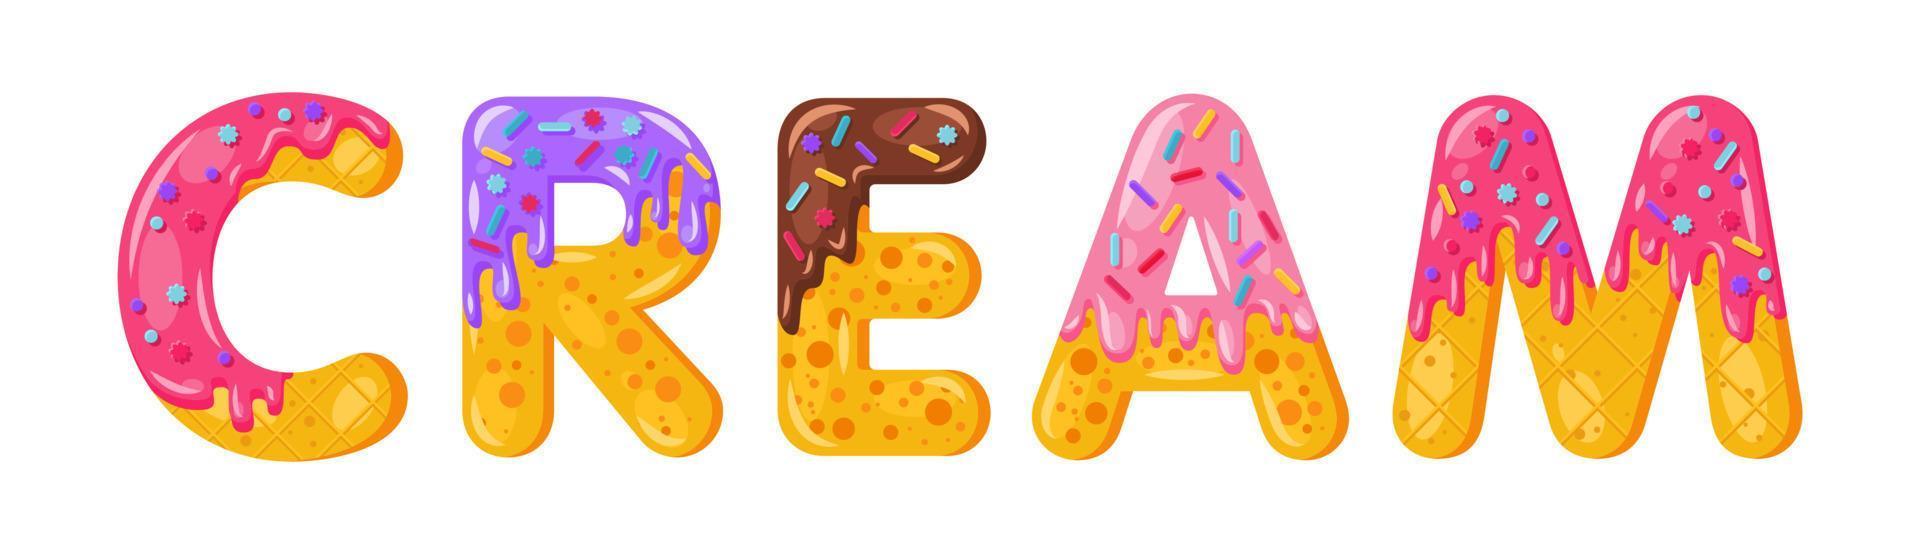 Donut-Cartoon-Creme-Keks-fetter Schriftstil. verglaste Großbuchstaben. verlockende Typografie mit flachem Design. Kekse, Schokoladenbuchstaben. weißer Hintergrund. gebäck, bäckerei, waffel isolierte vektorcliparts vektor